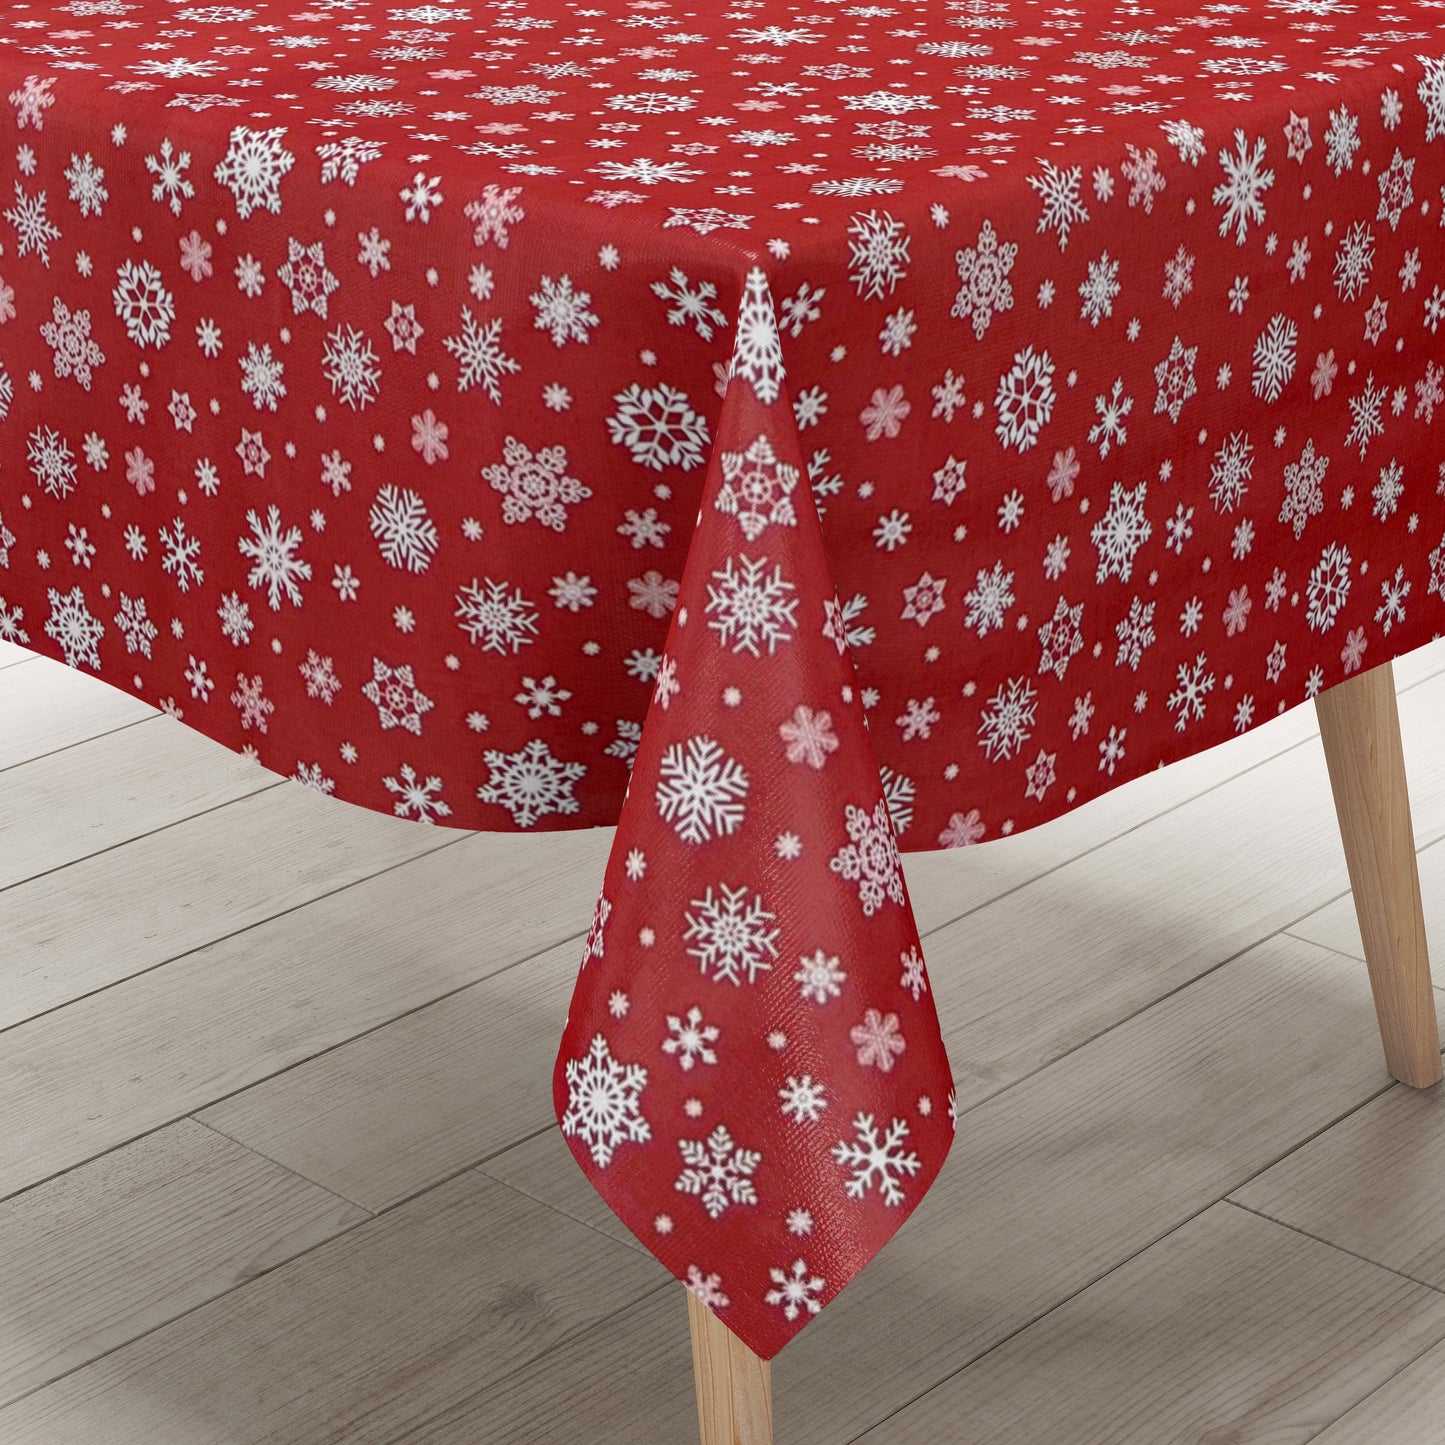 Wachstuch Tischdecke geprägt Weihnachten P1096-03 Schneeflocken auf rot eckig rund oval